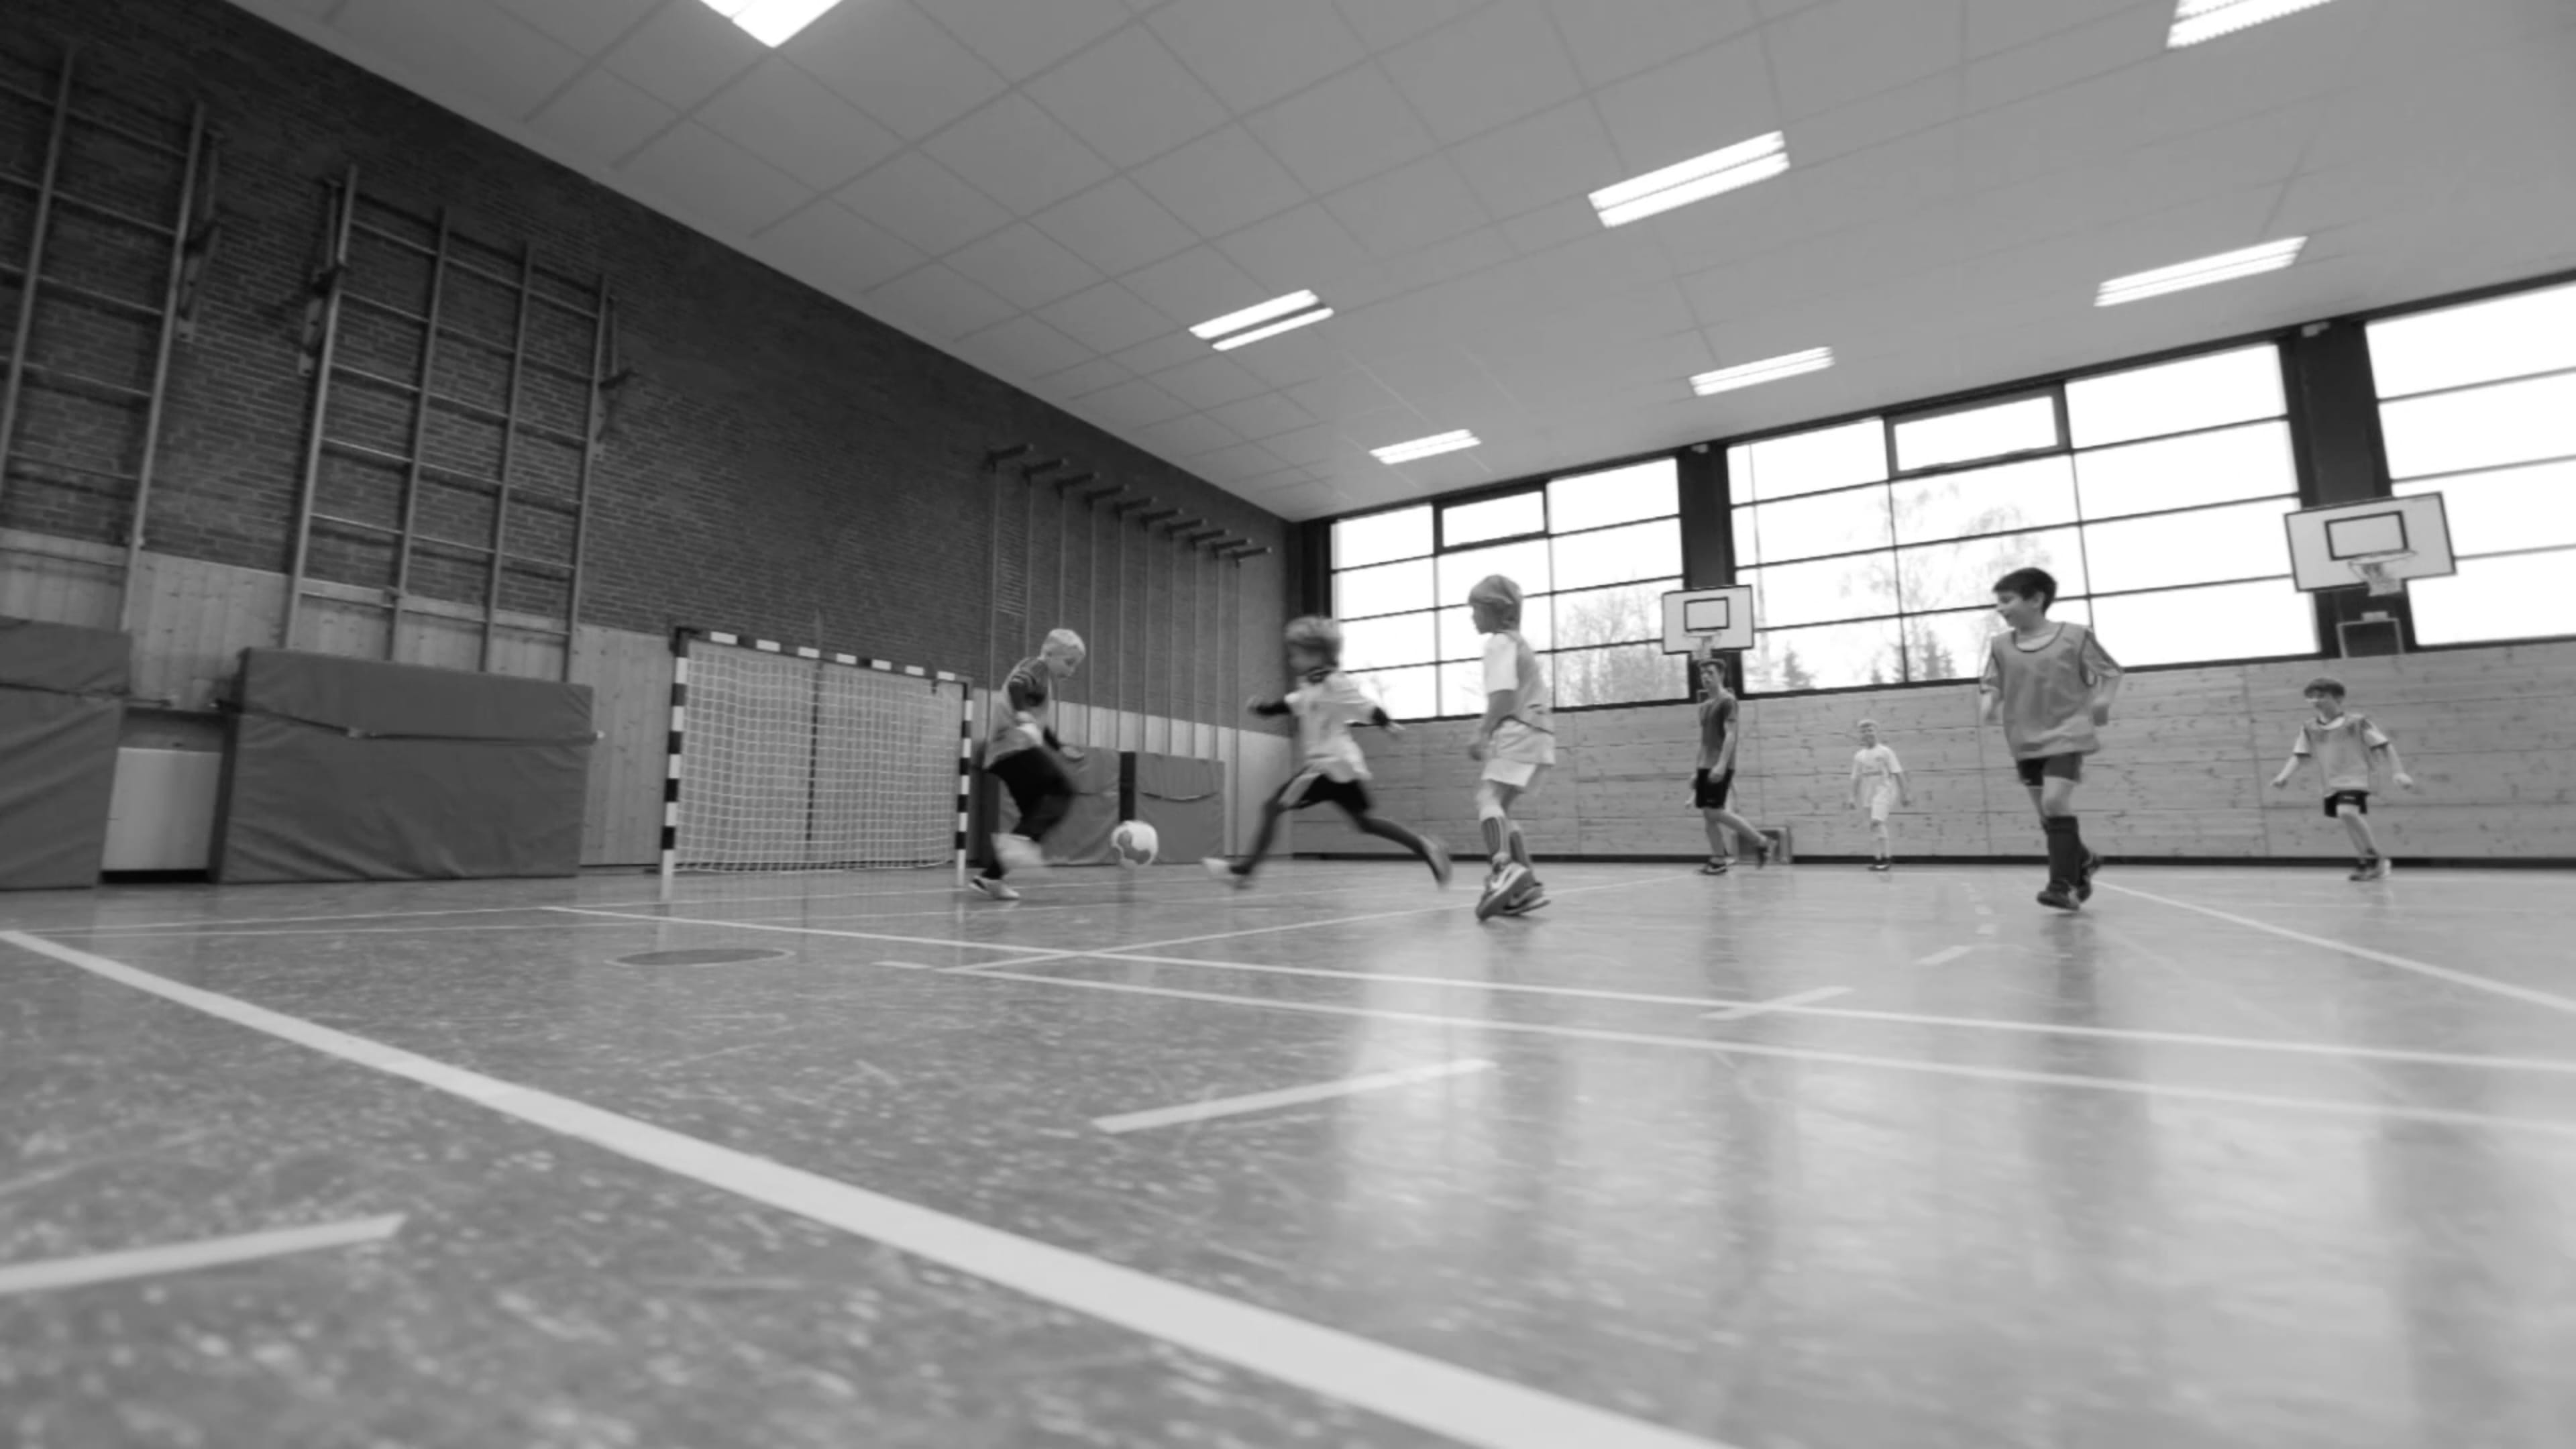 Kinder spielen Fußball in der Halle